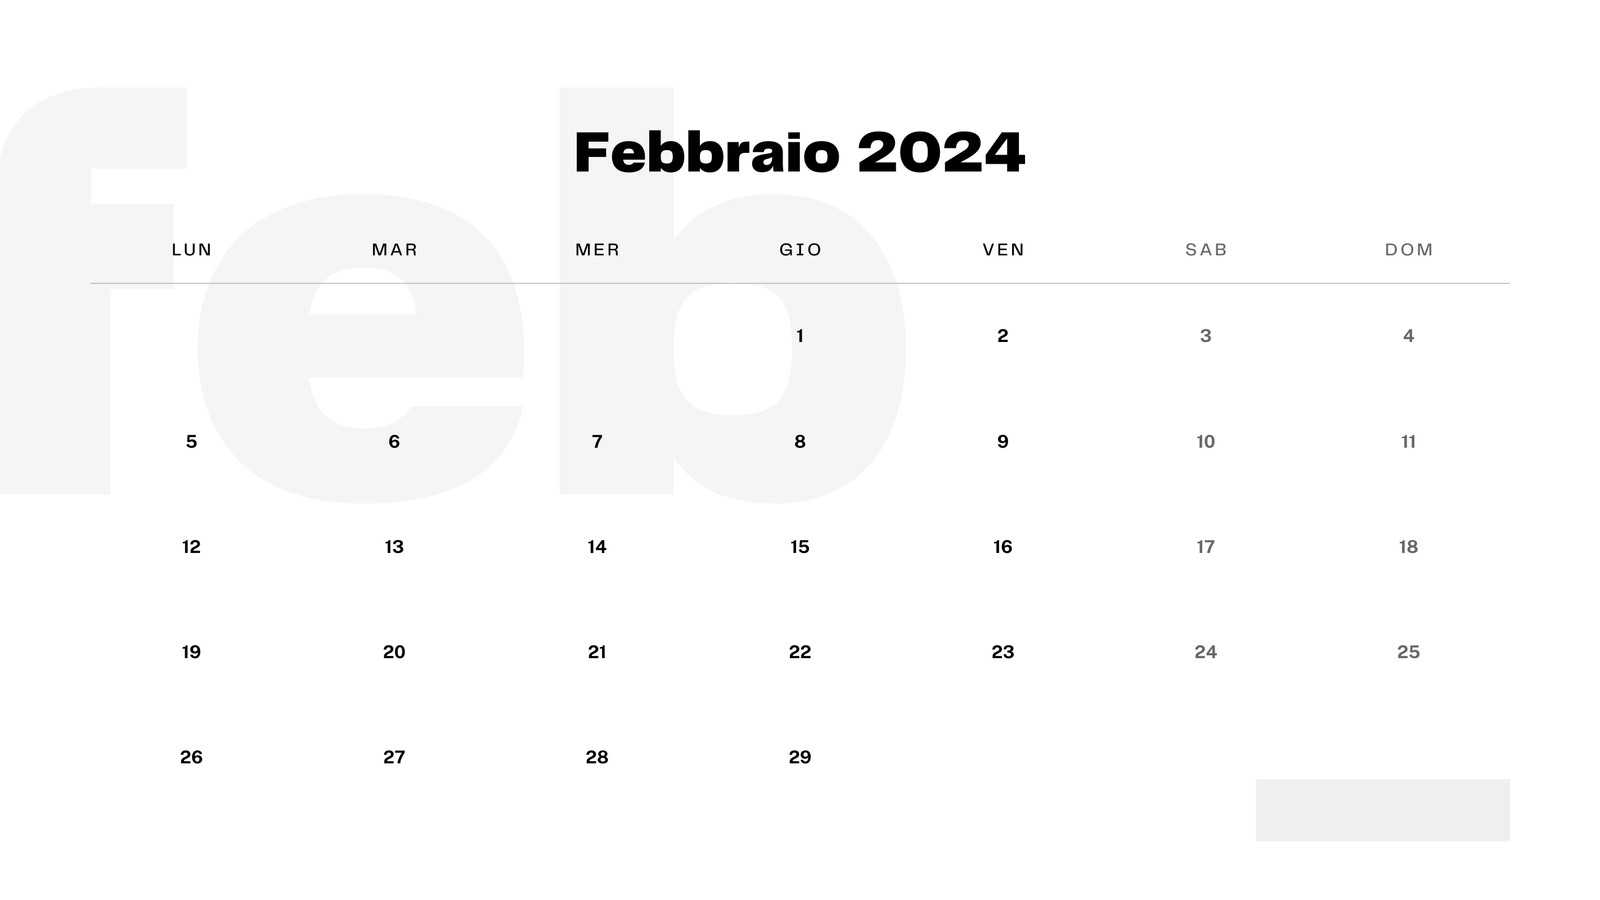 Calendario illustrato della Famiglia 2021